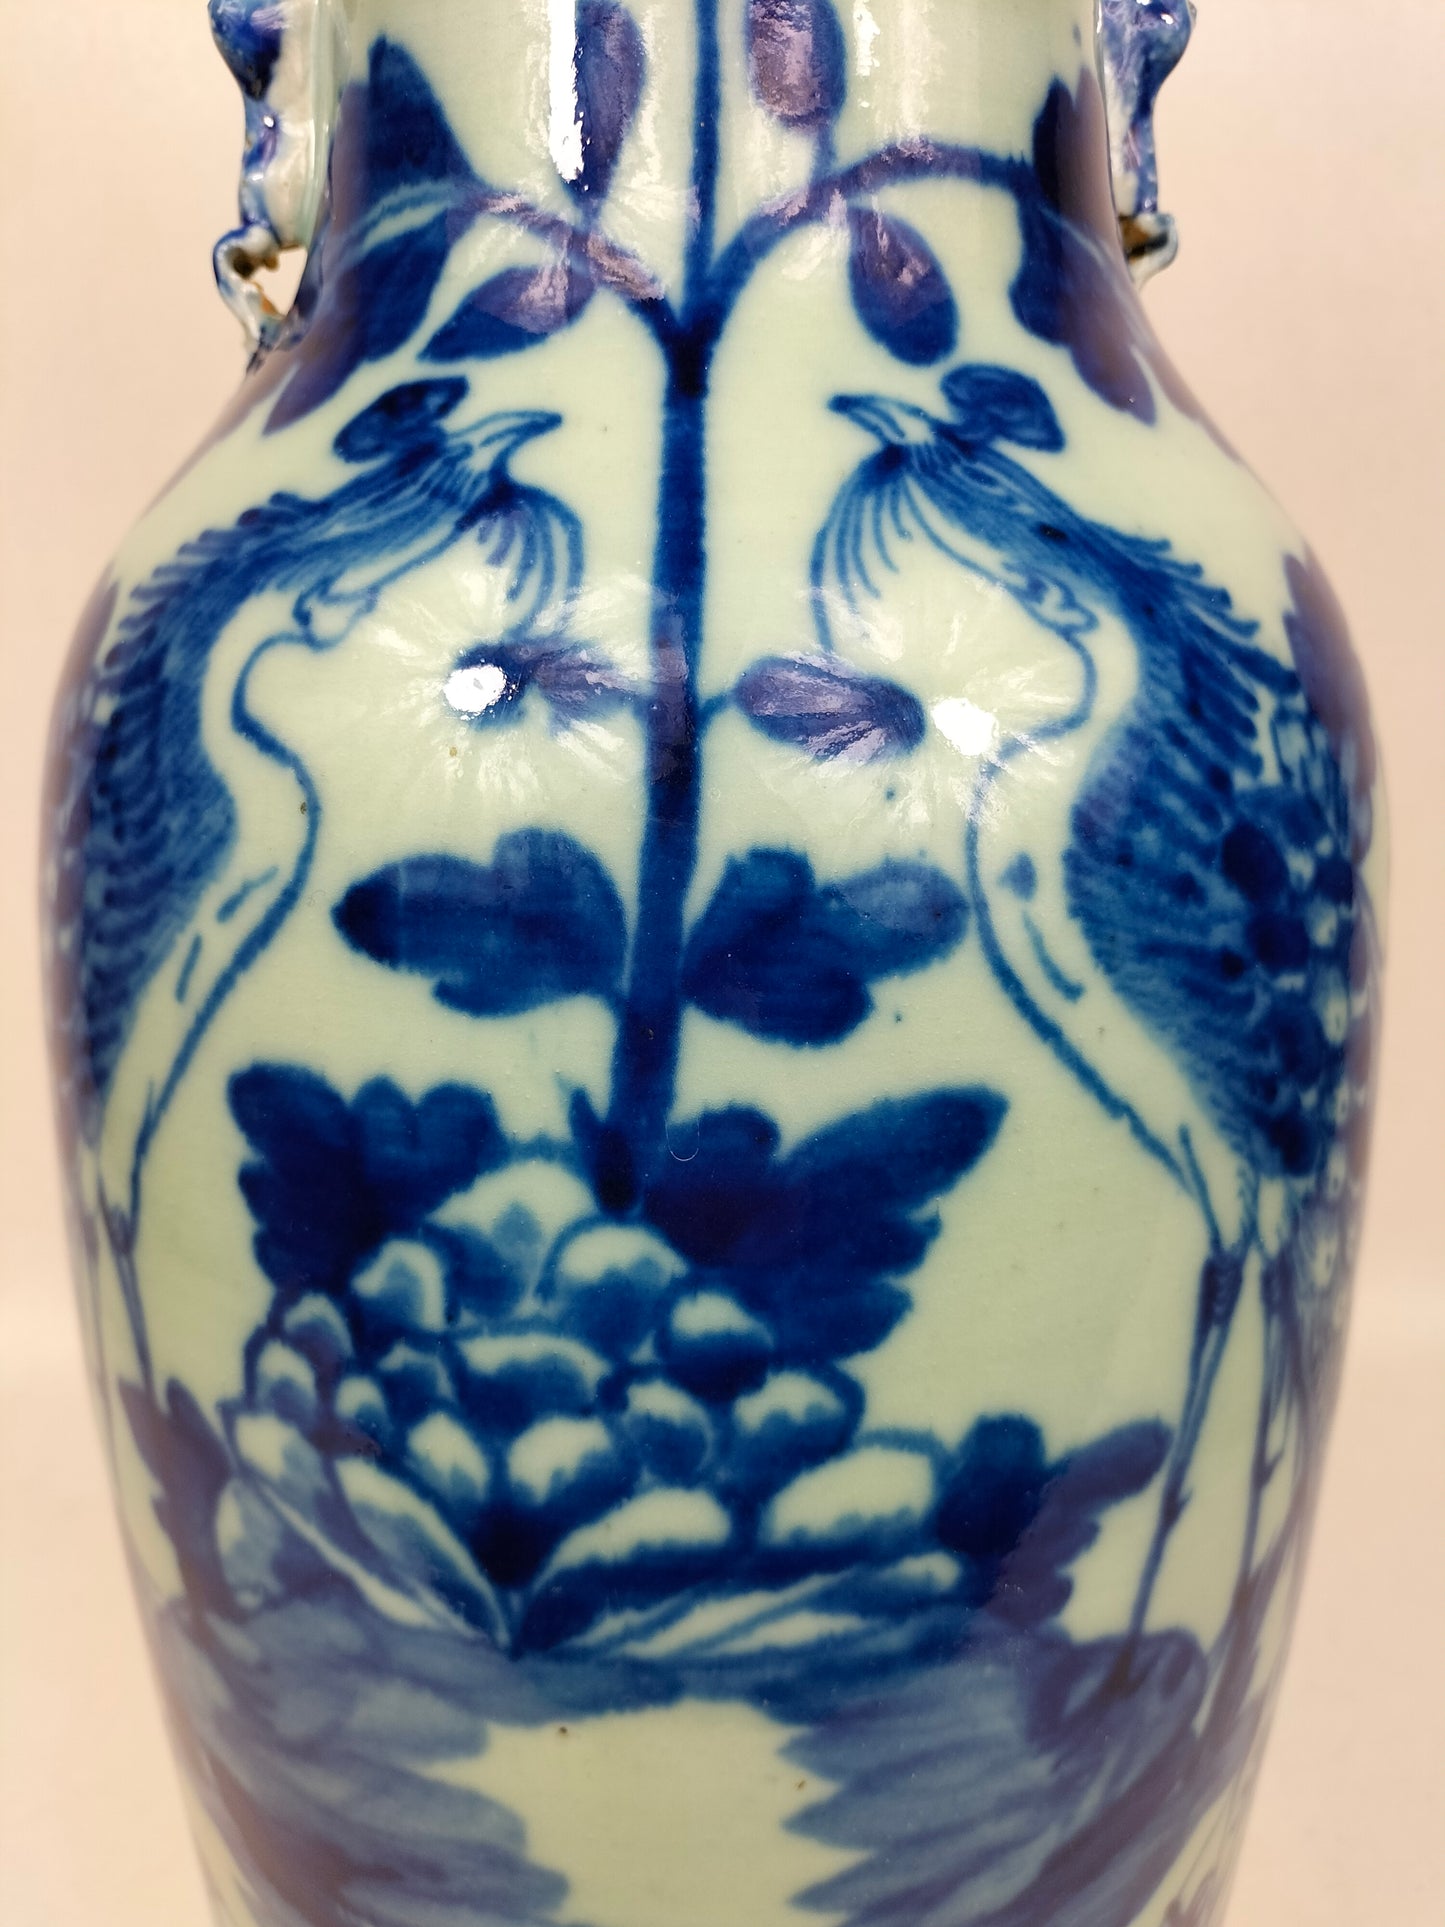 مزهرية كبيرة ملونة من السيلادون الصيني العتيقة مزينة بالطيور والزهور // عهد أسرة تشينغ - القرن التاسع عشر